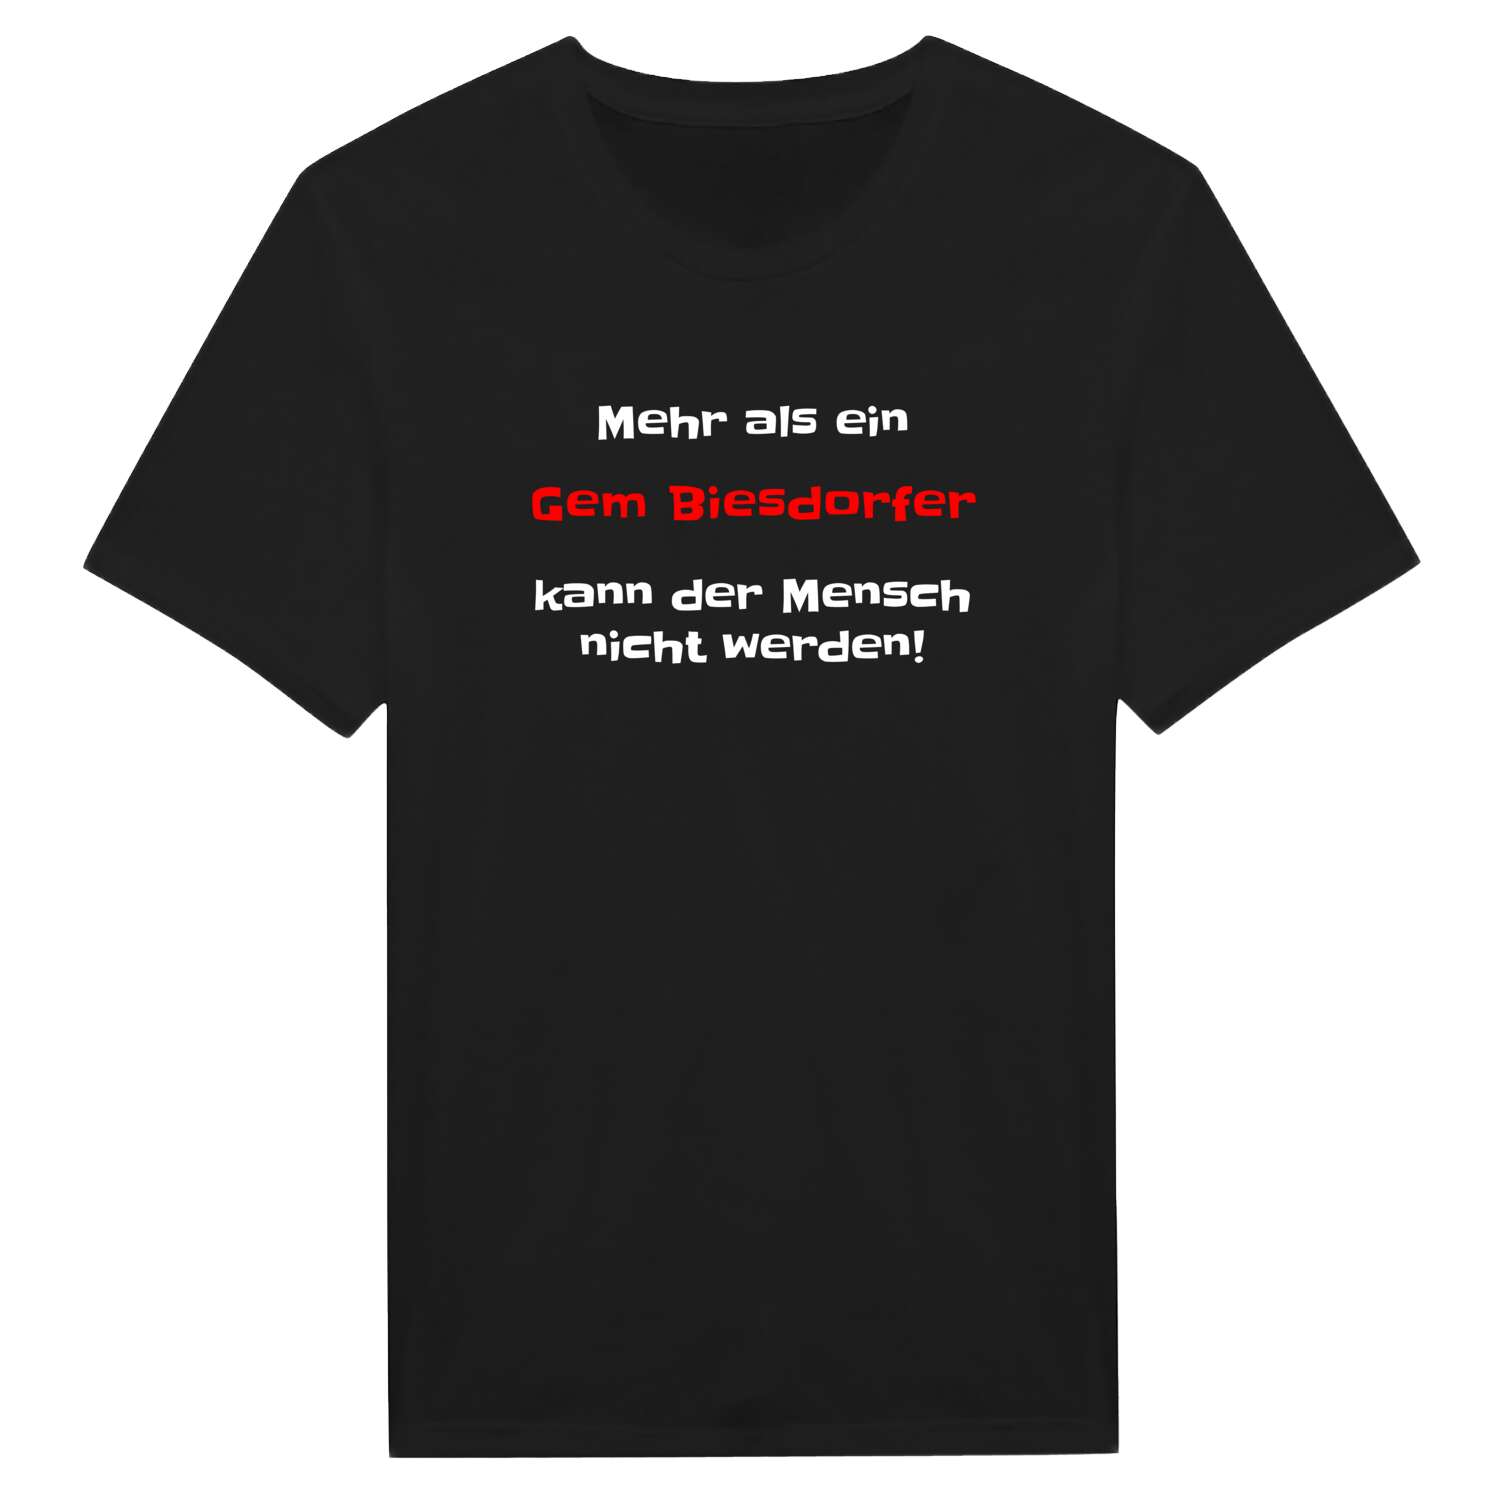 Gem Biesdorf T-Shirt »Mehr als ein«